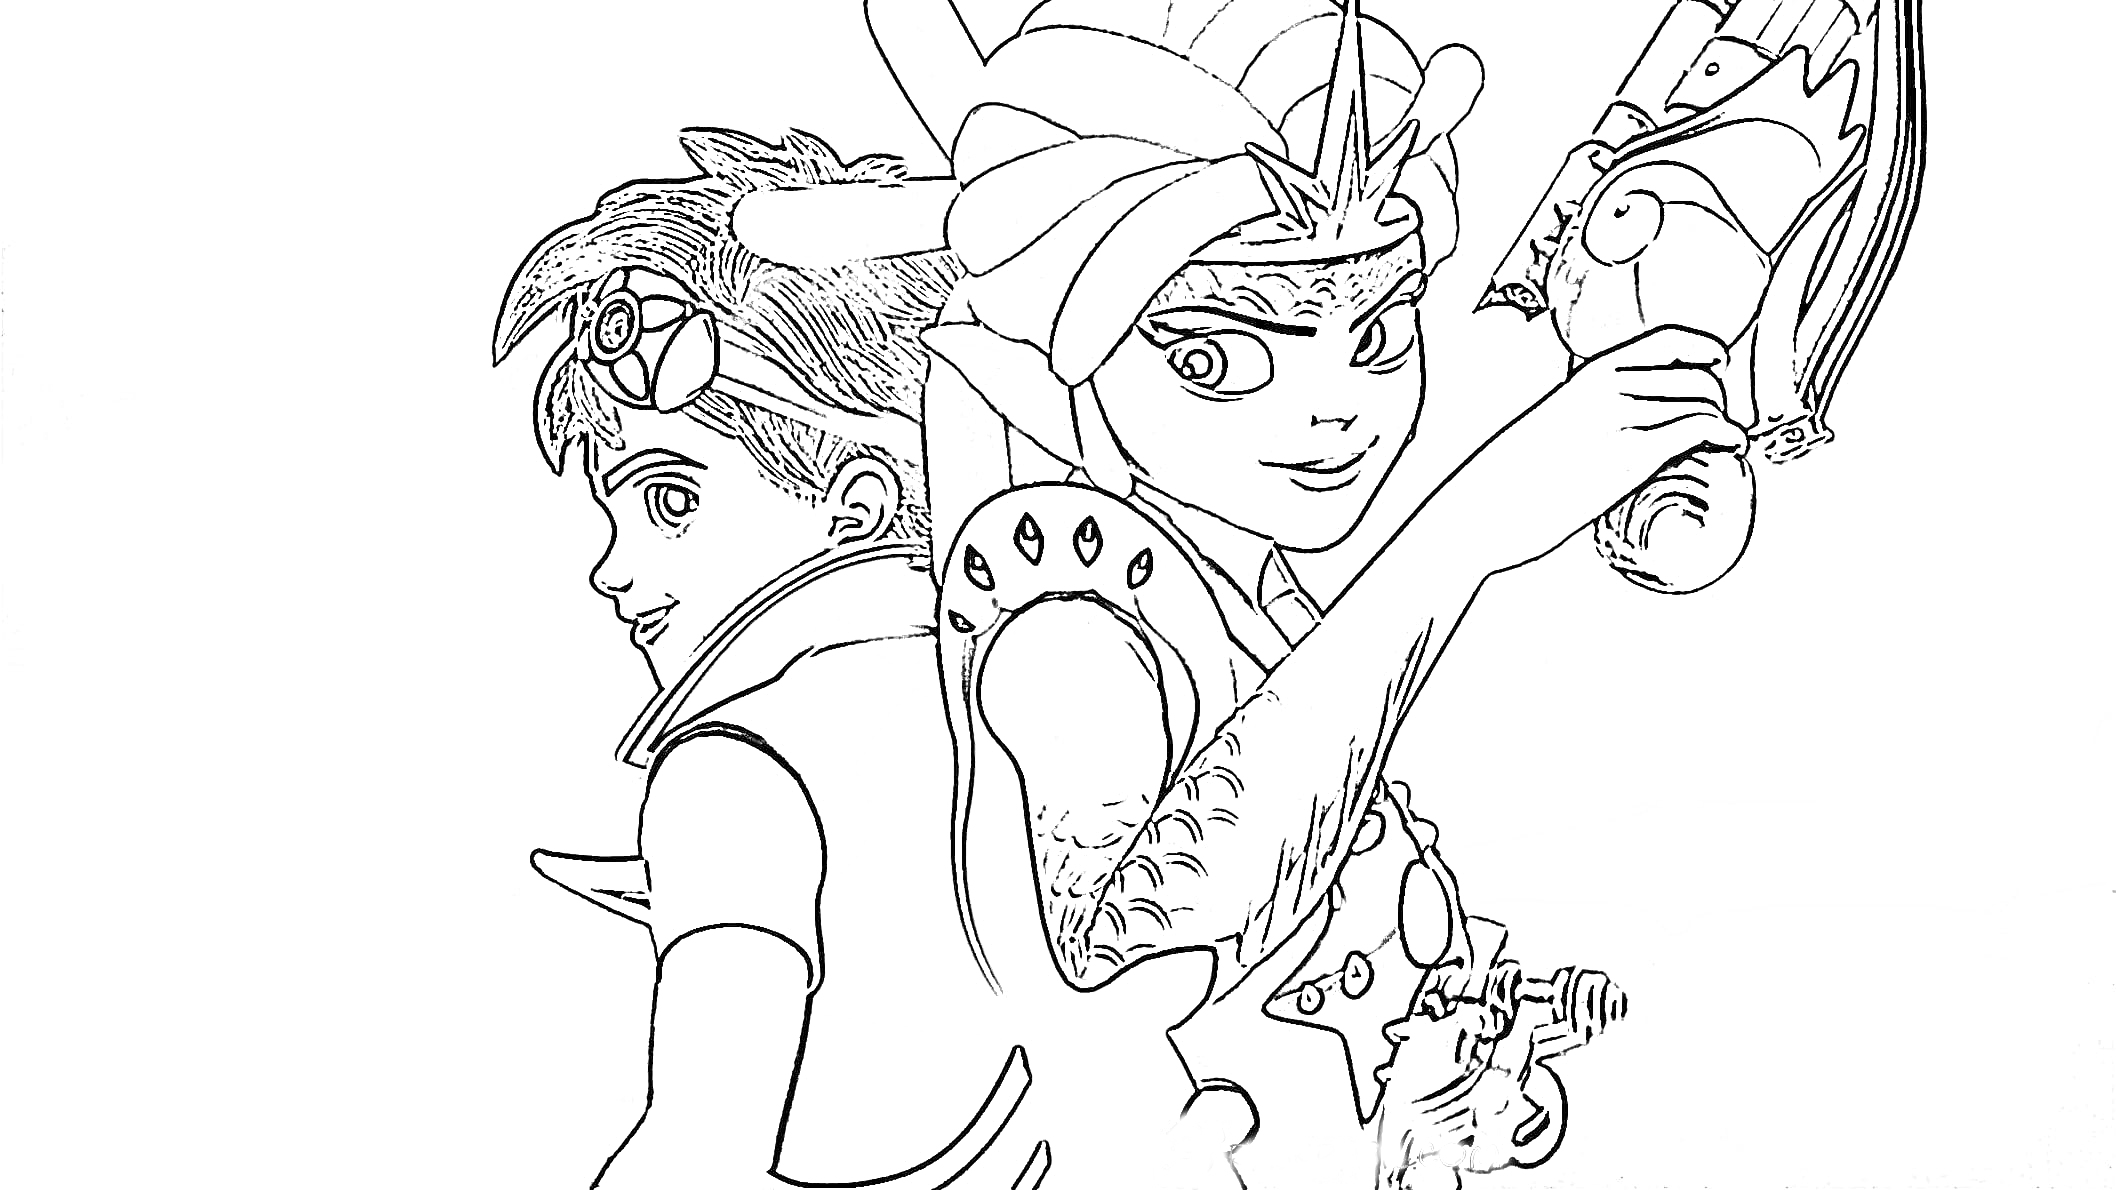 Раскраска Две центральные фигуры, вероятно, персонажи из мультсериала 